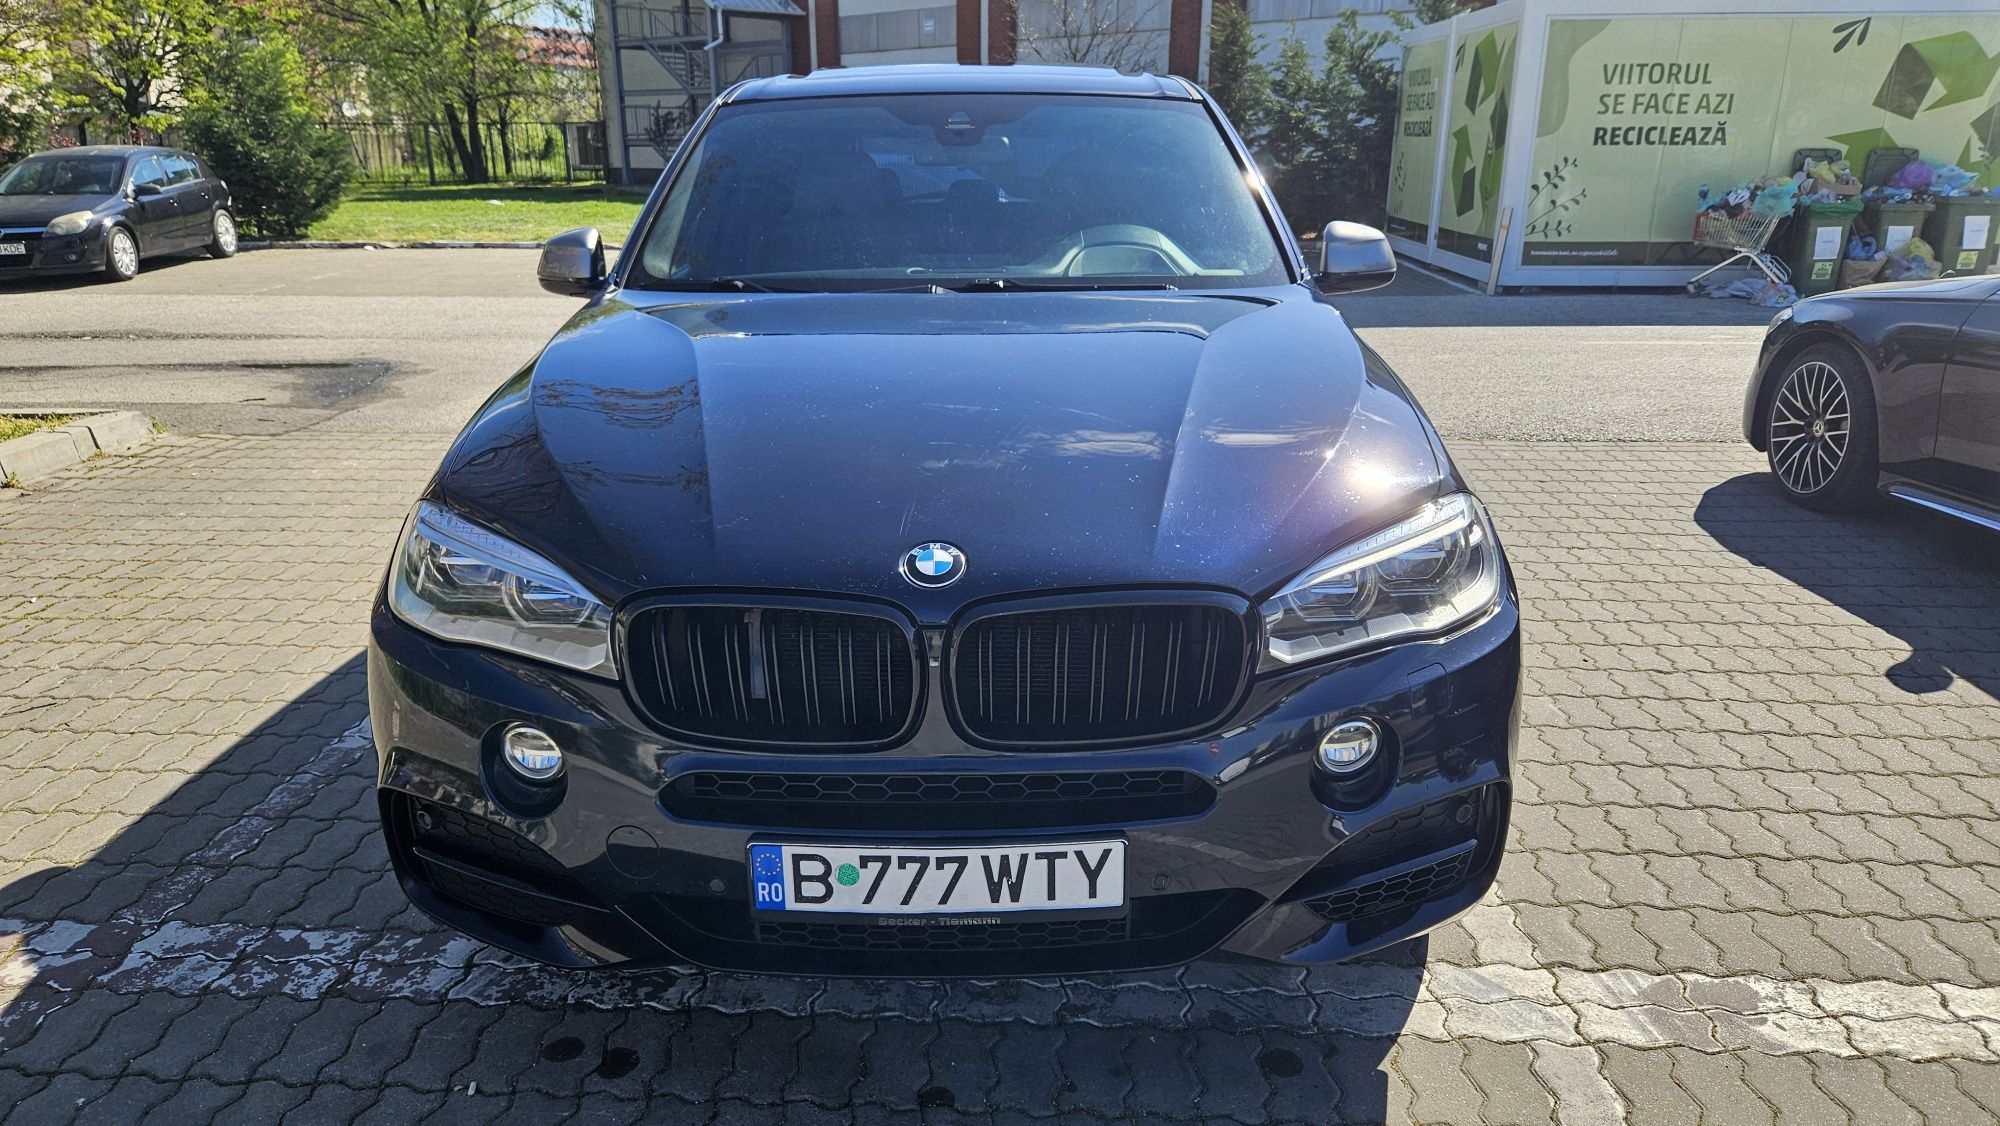 BMW X5 M50d|Triturbo|xDrive|Pano|Webasto|HK|381 Cp|Head-Up|20"|Navi|